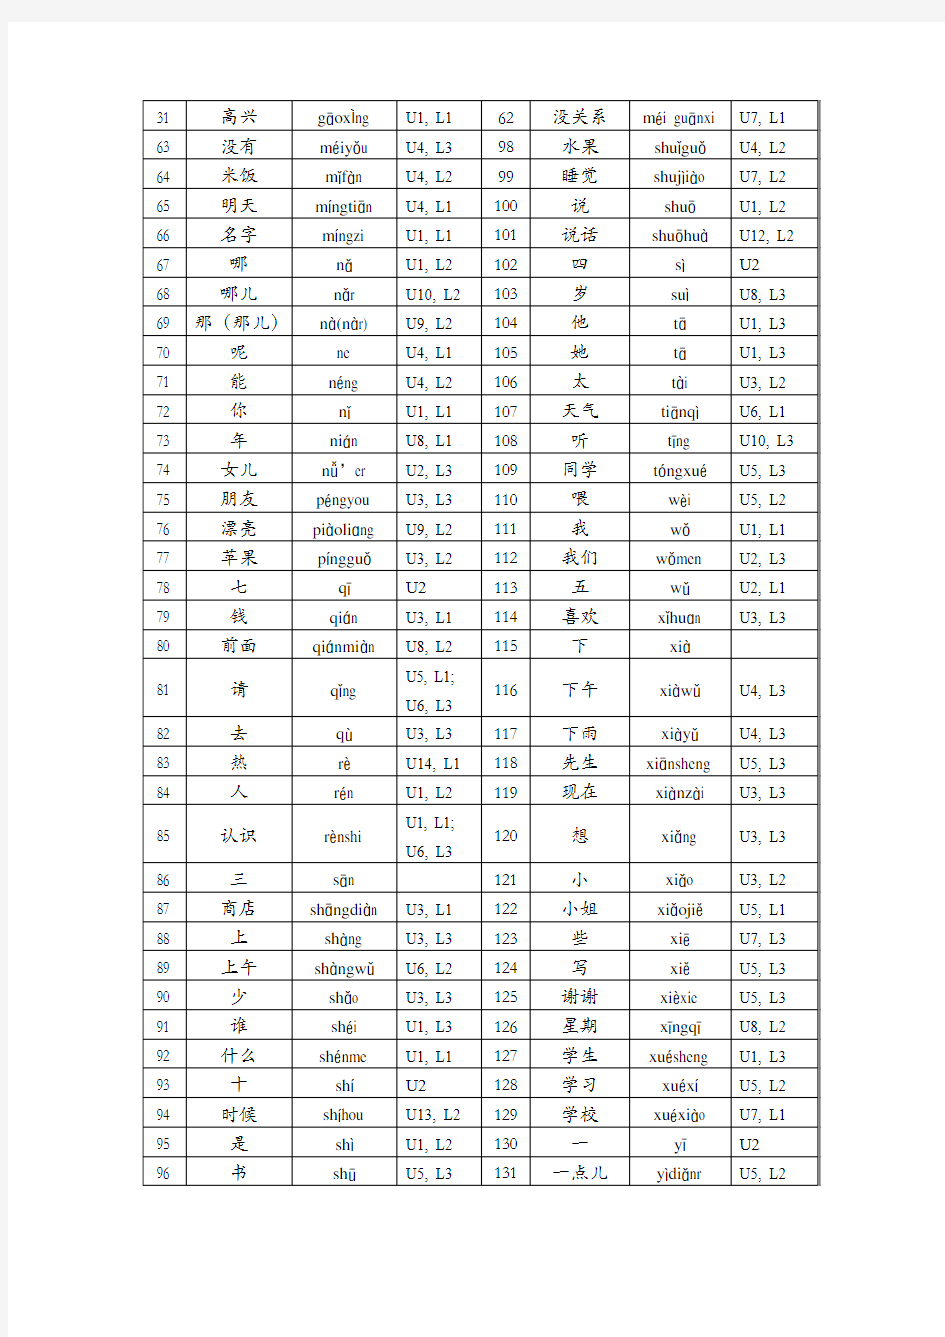 汉语基础教程新HSK三级词汇表